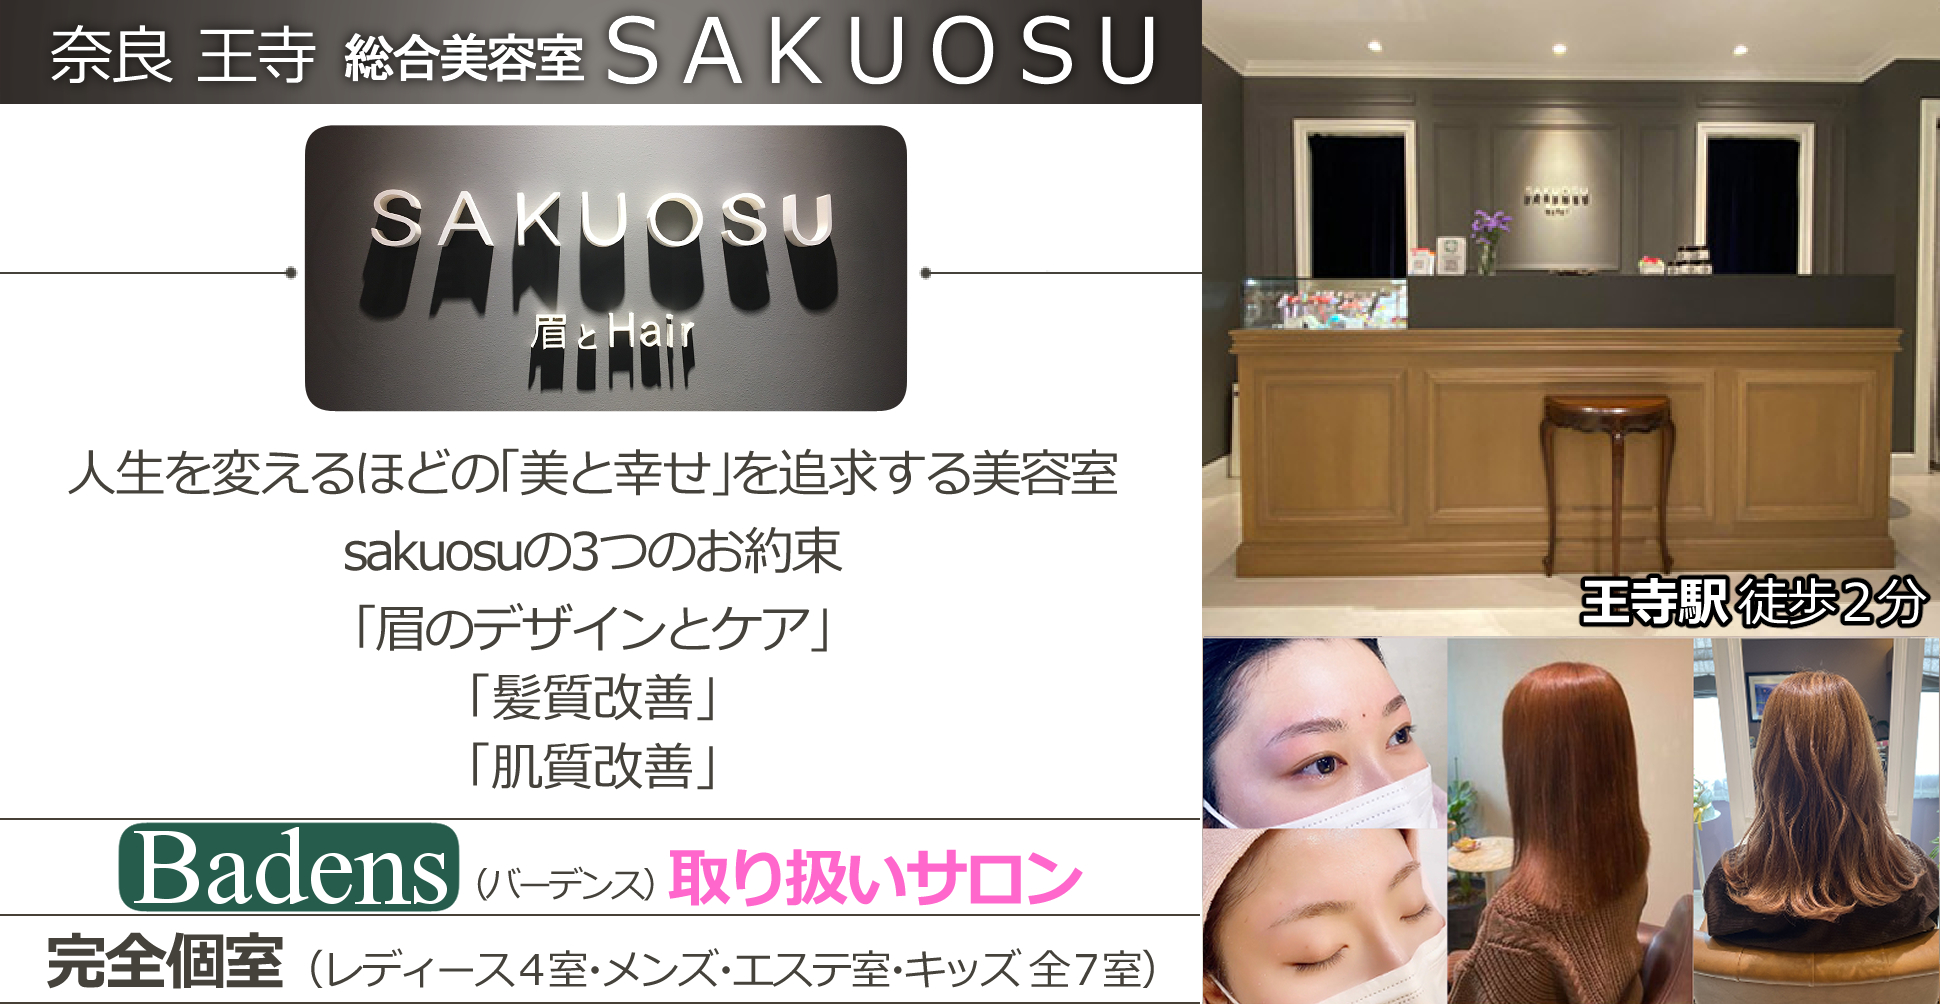 人生を変えるほどの「美と幸せ」を追求する美容室sakuosuの3つのお約束「眉のデザインとケア」「髪質改善」「肌質改善」